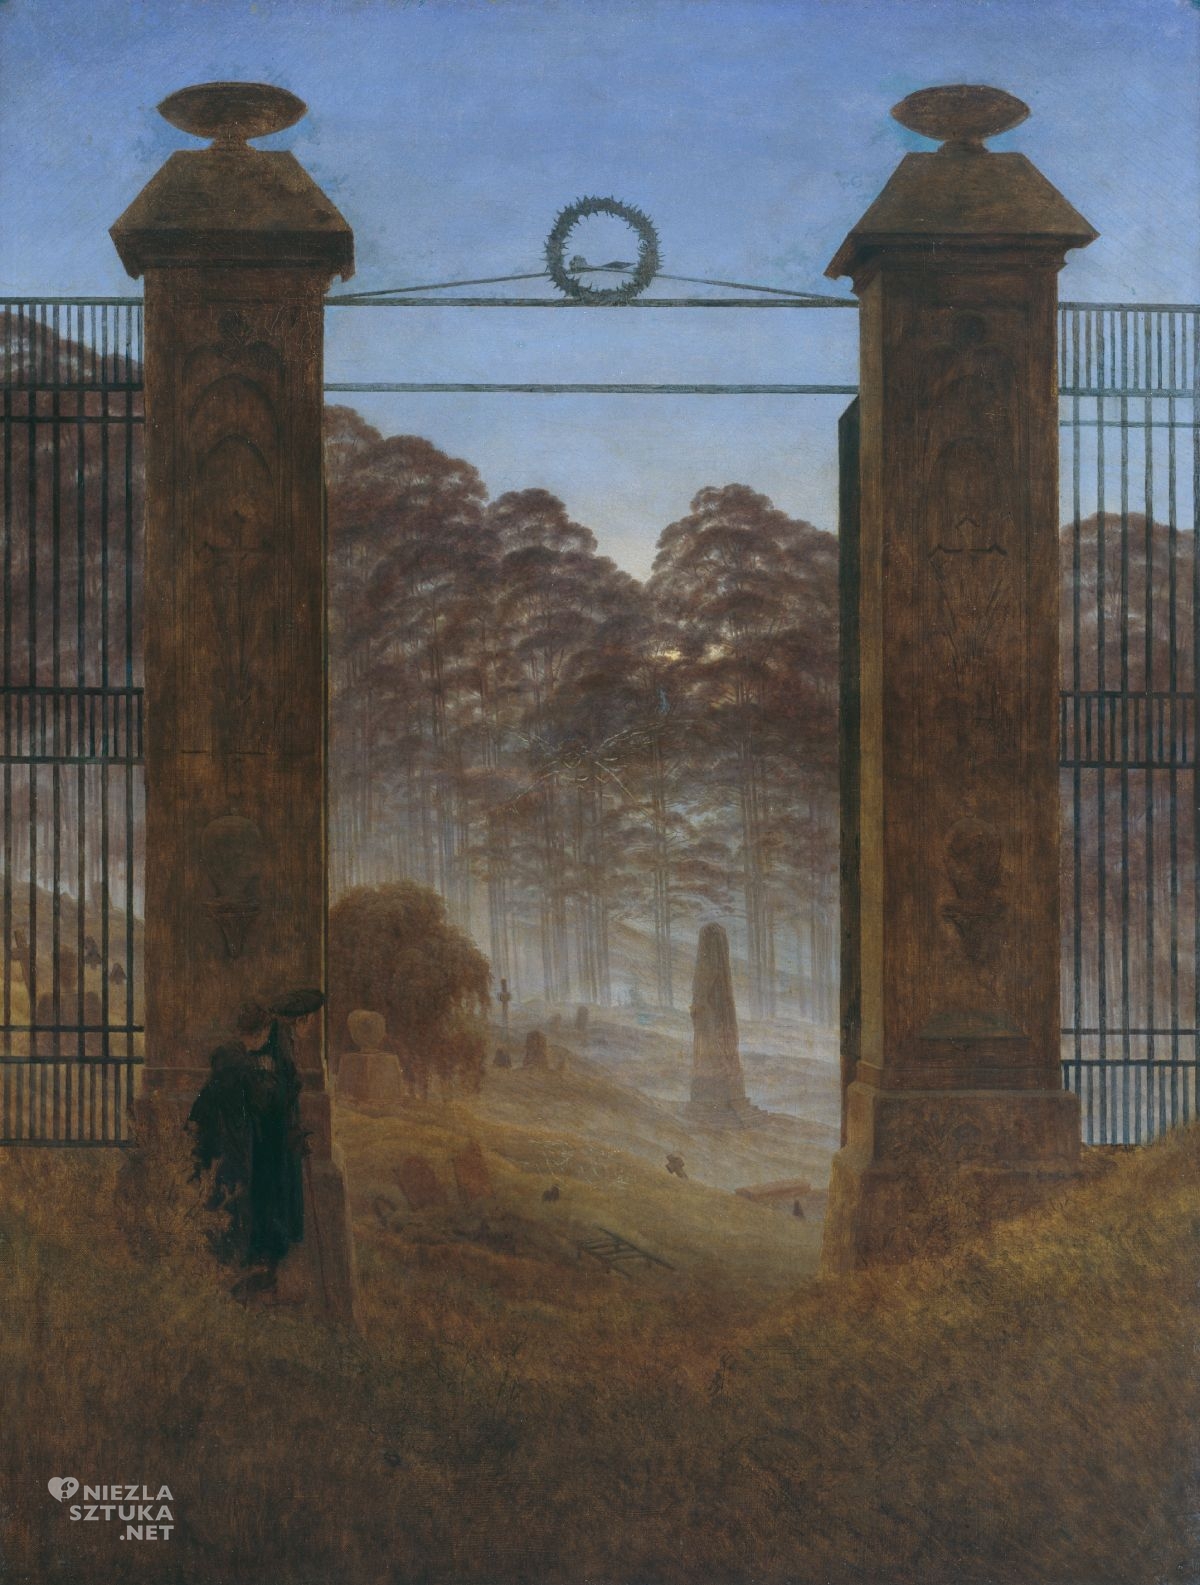 Caspar David Friedrich, Cmentarz, olej, płótno, pejzaż, brama, sztuka niemiecka, romantyzm, Niezła Sztuka